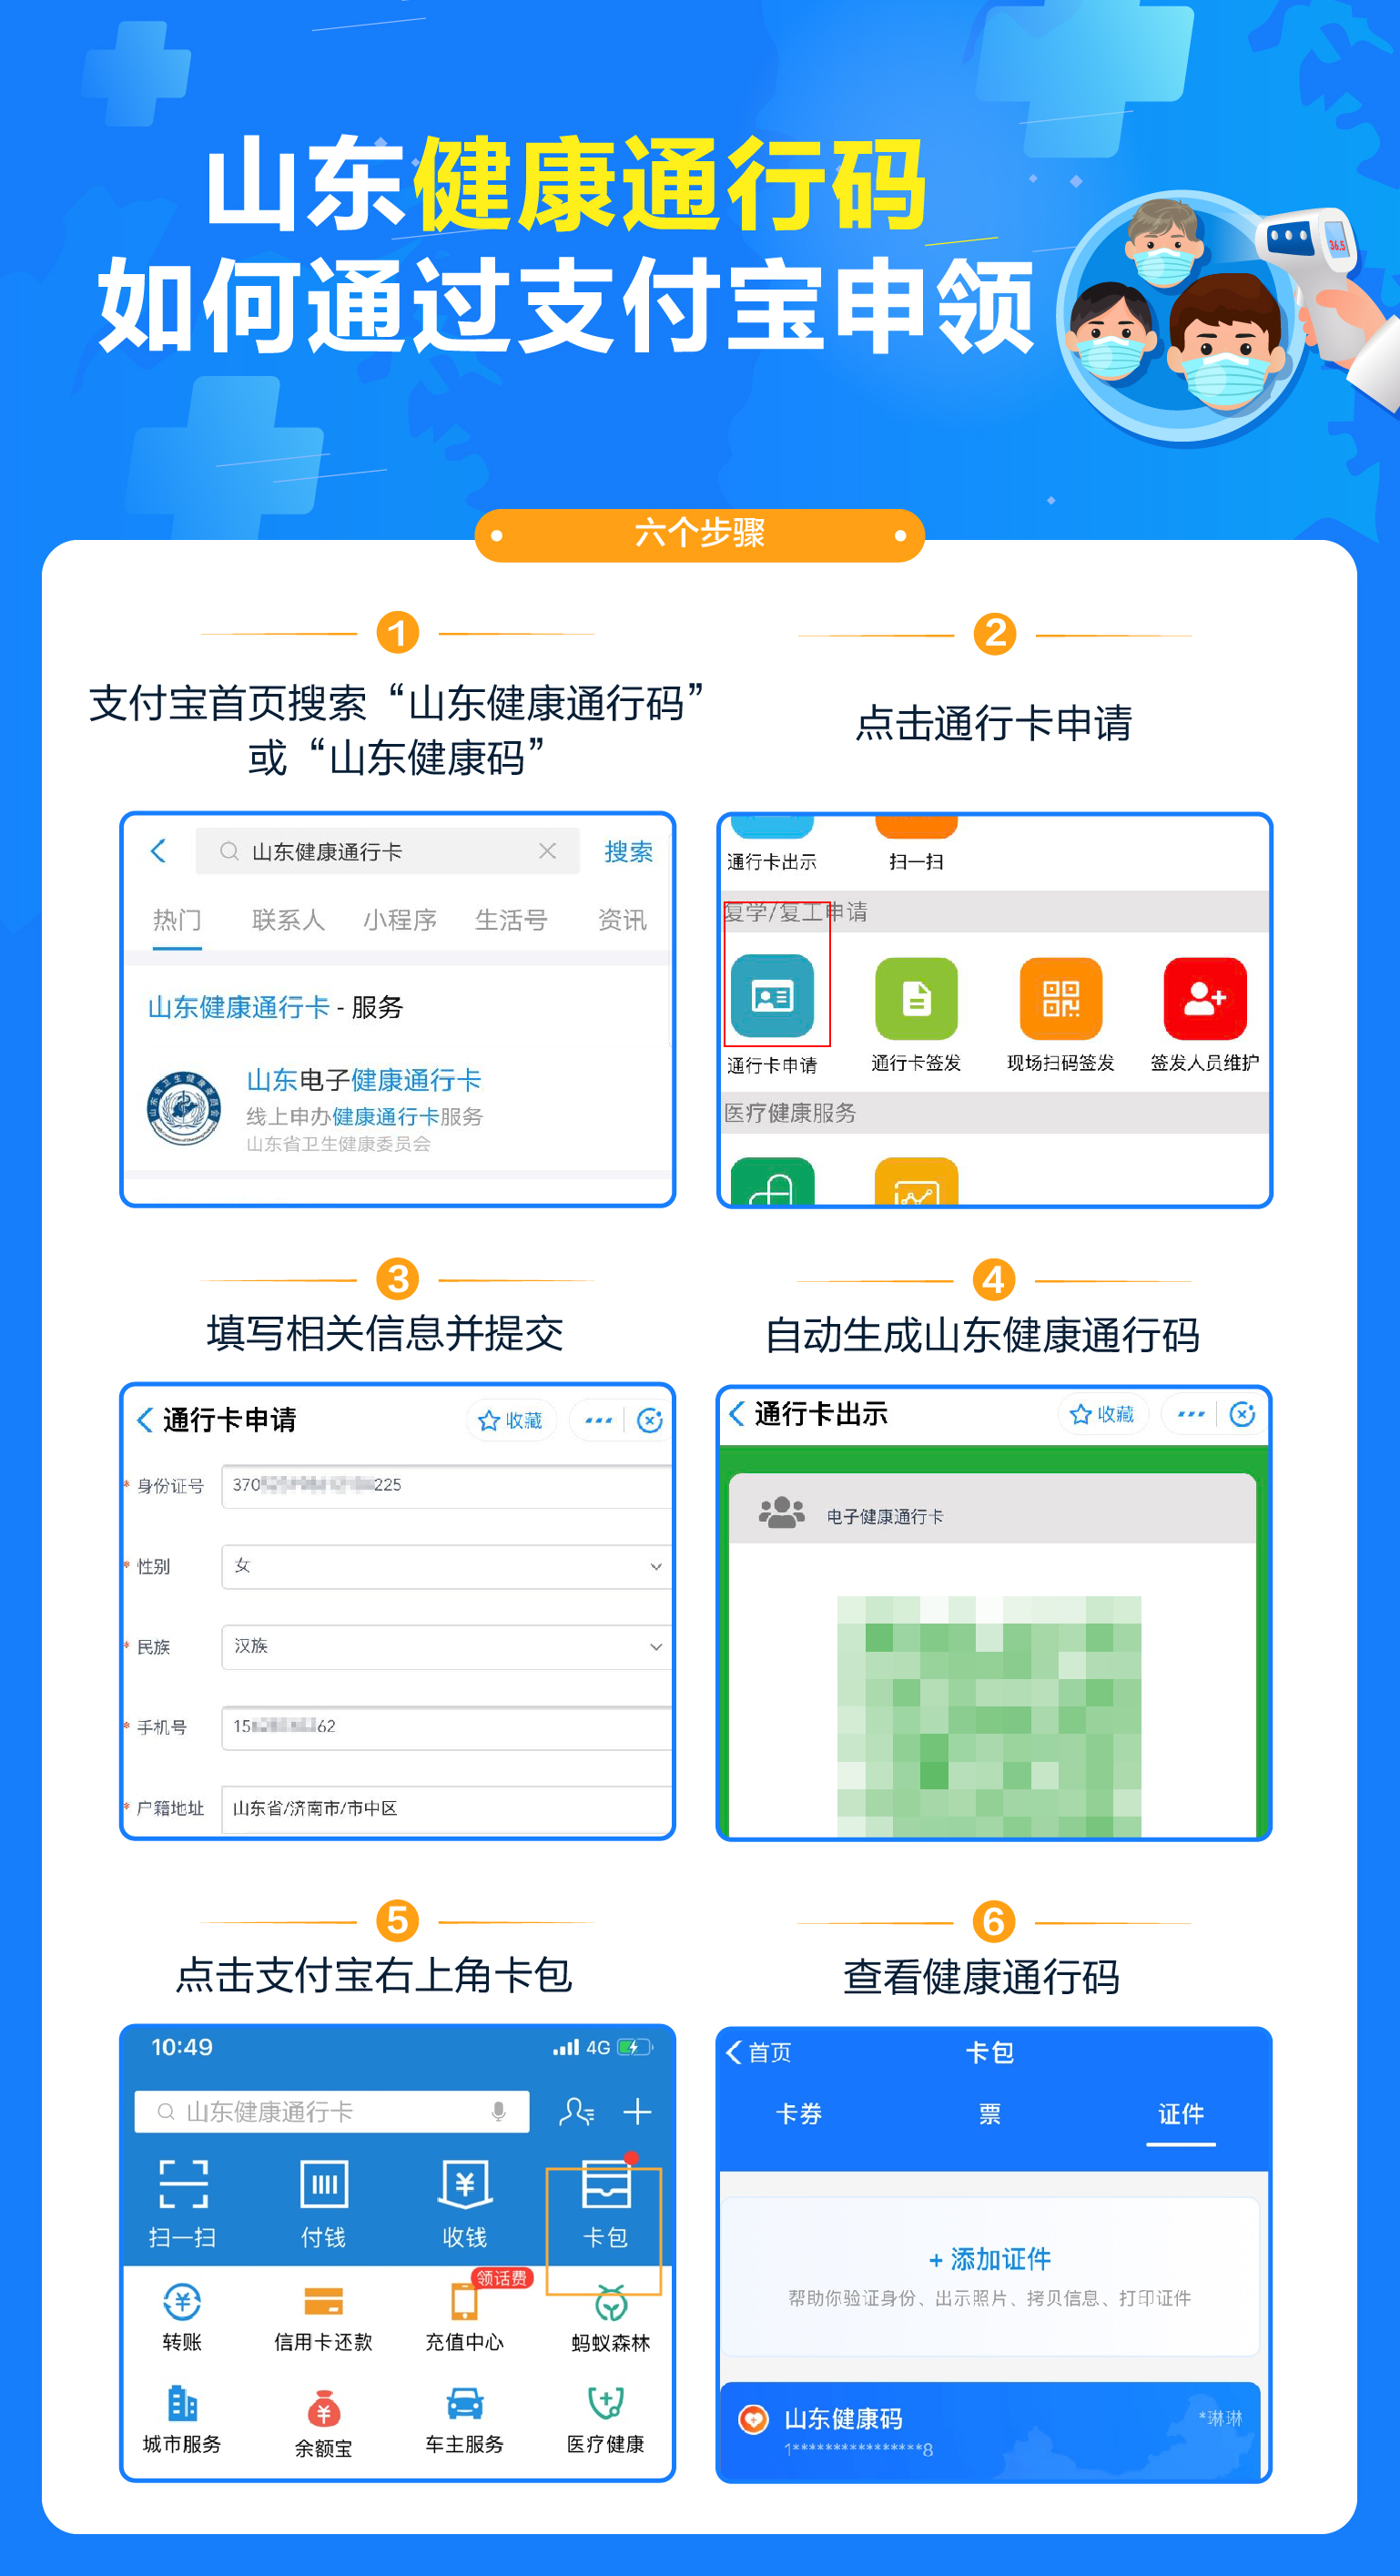 山东与上海等14省区市建立电子健康通行码省际互认,绿码互信通行